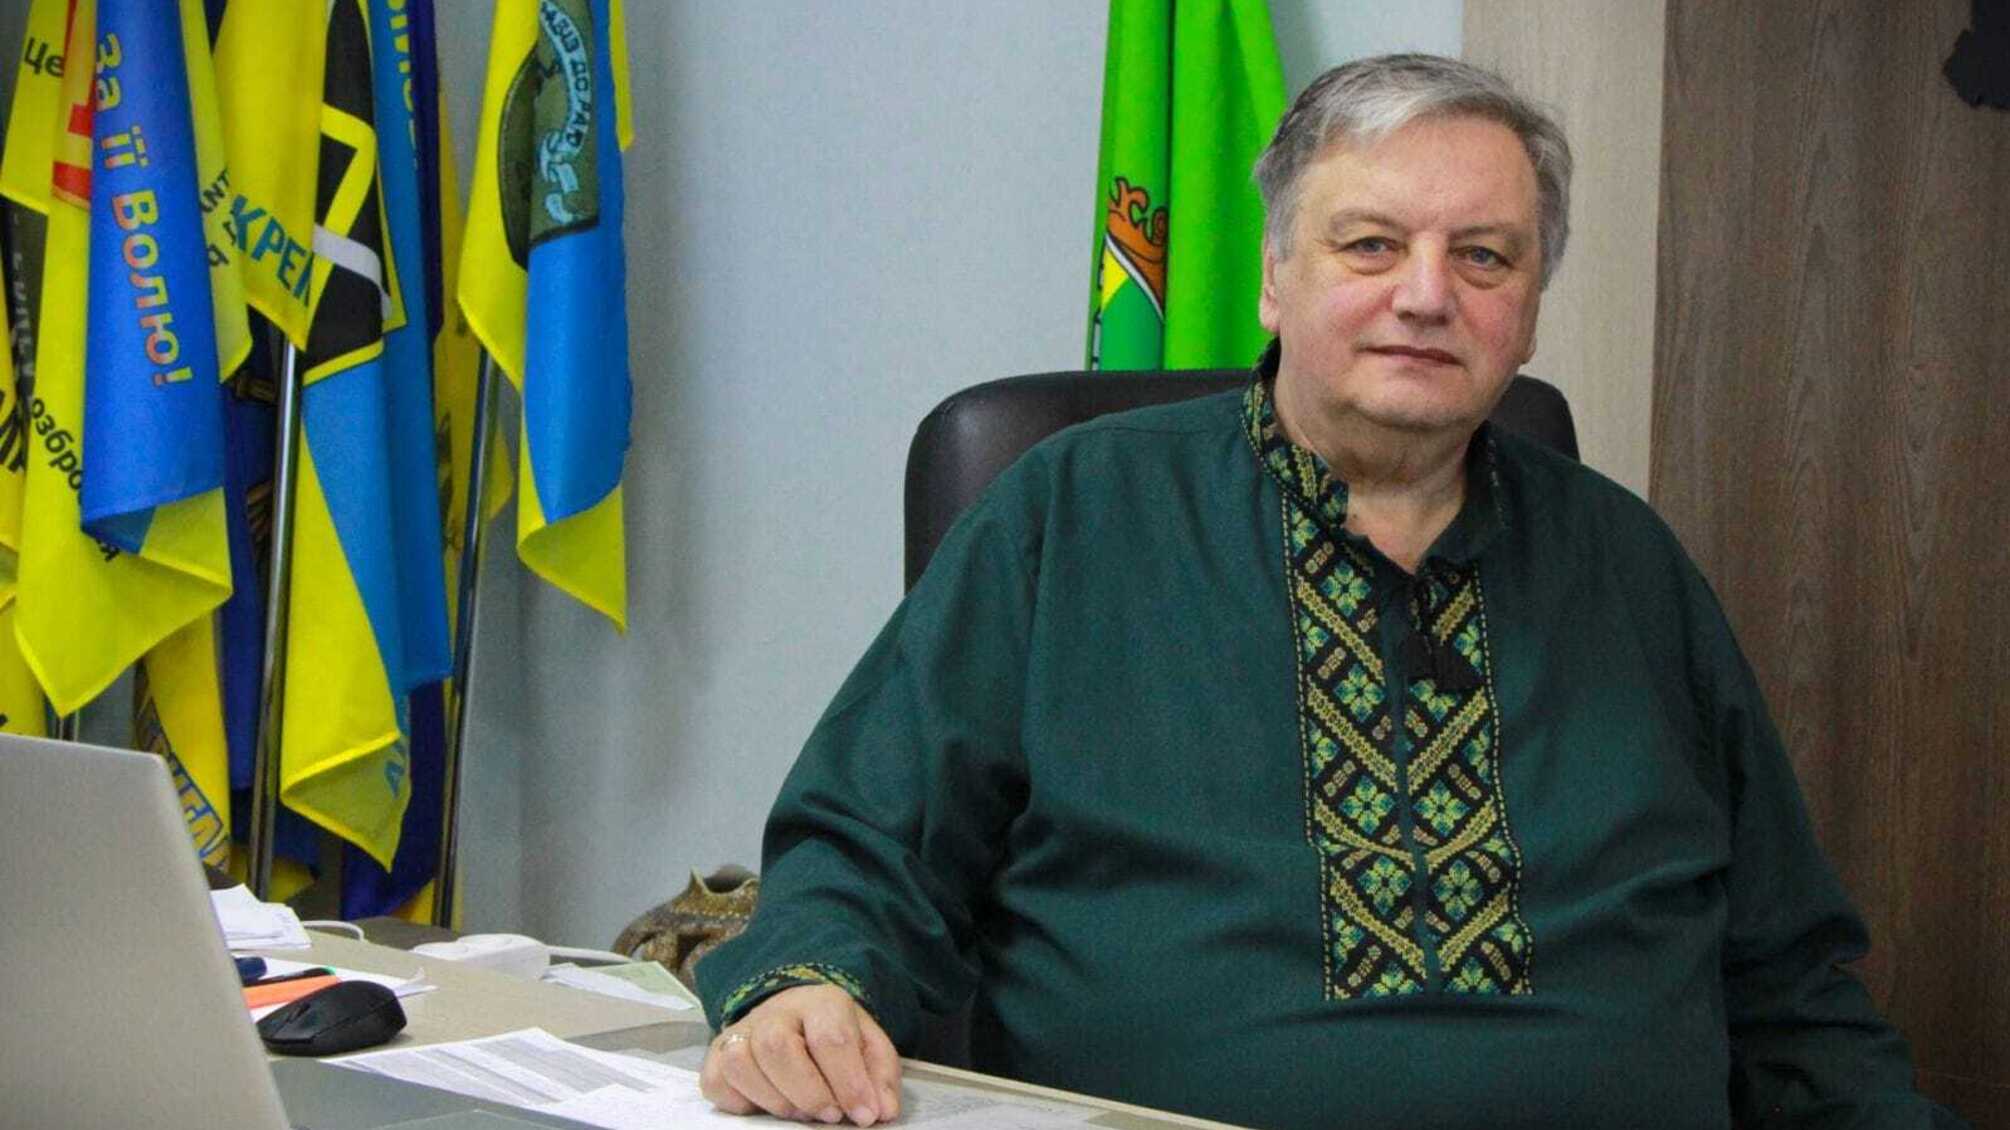 Мэр Нетешина провалил вопрос с укрытиями, но поспешил попиариться, – местные СМИ